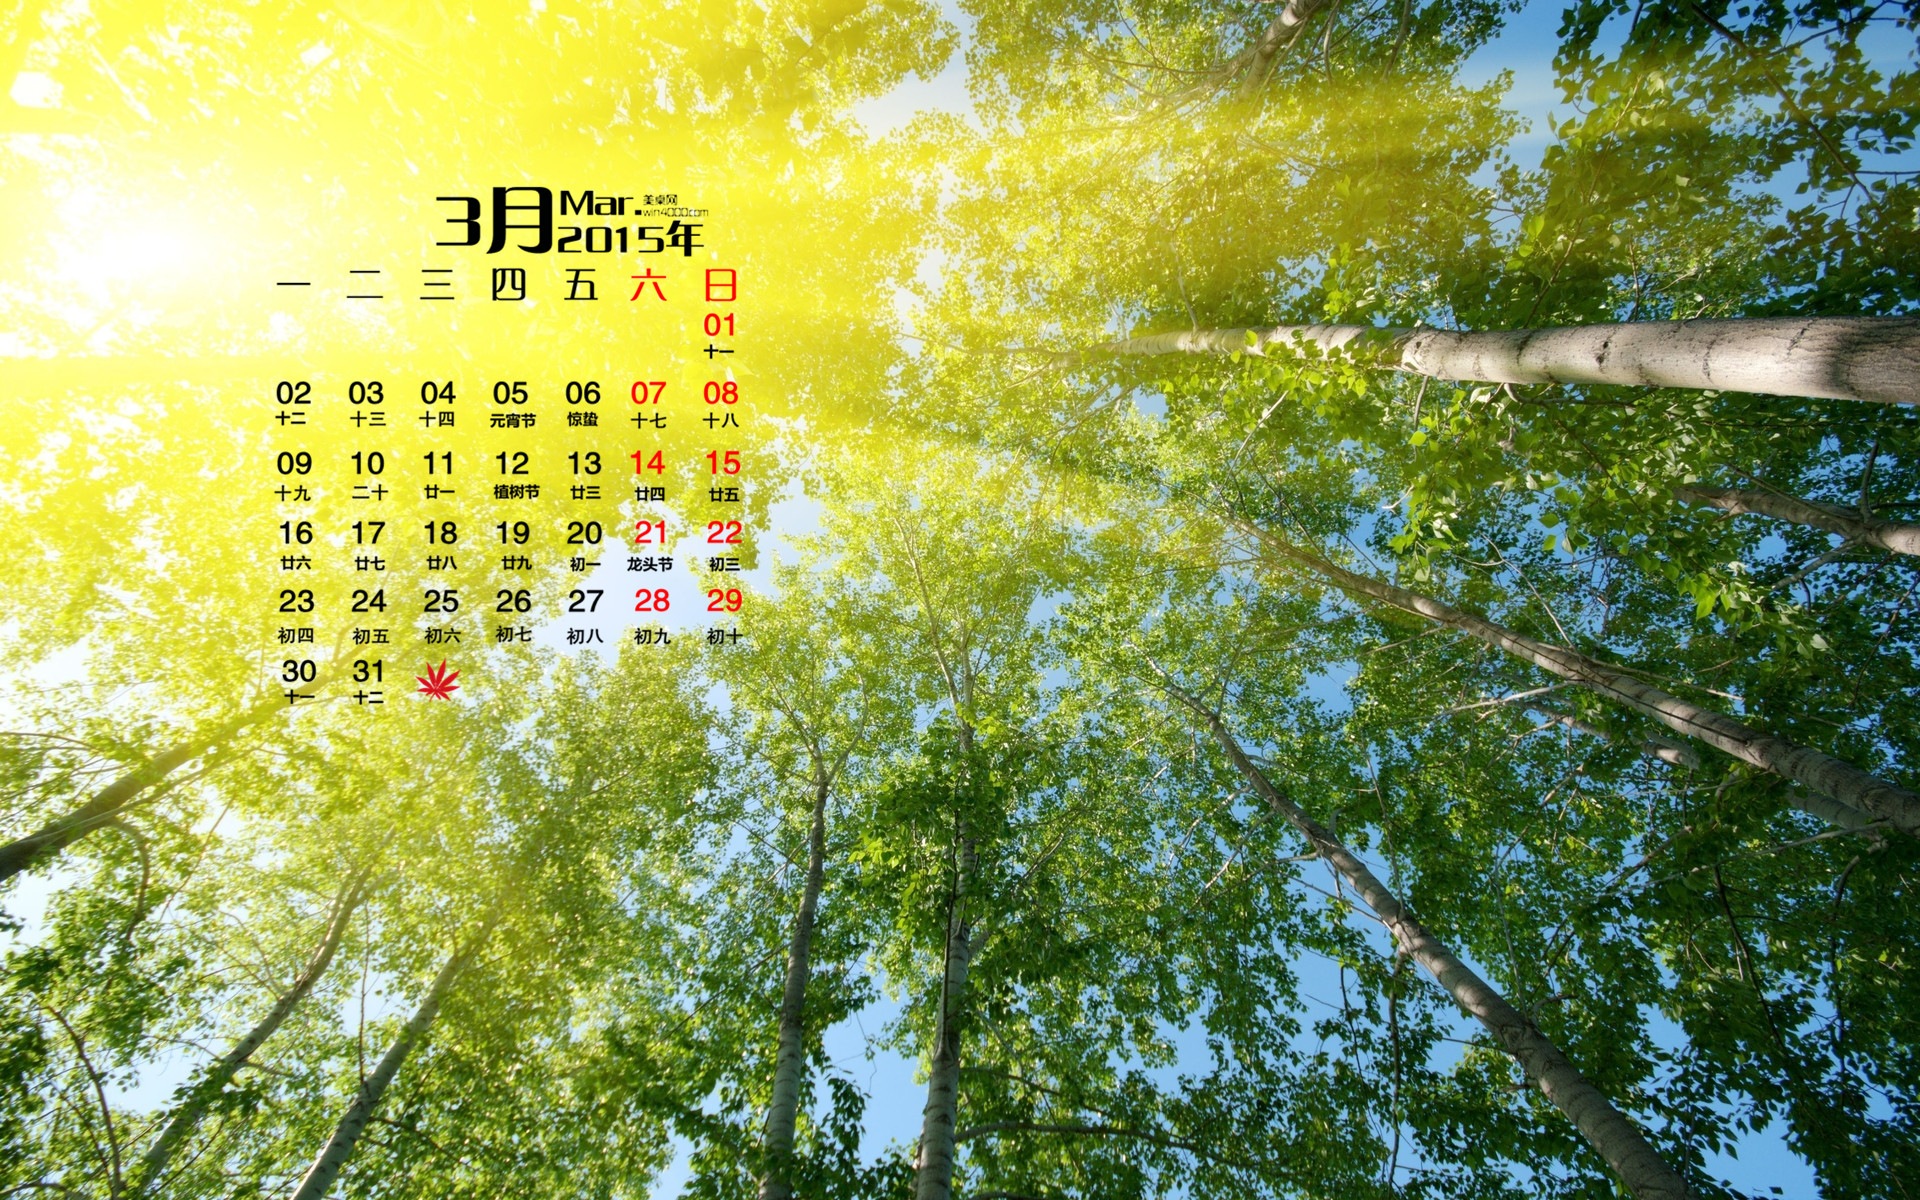 March 2015 Calendar wallpaper (1) #20 - 1920x1200